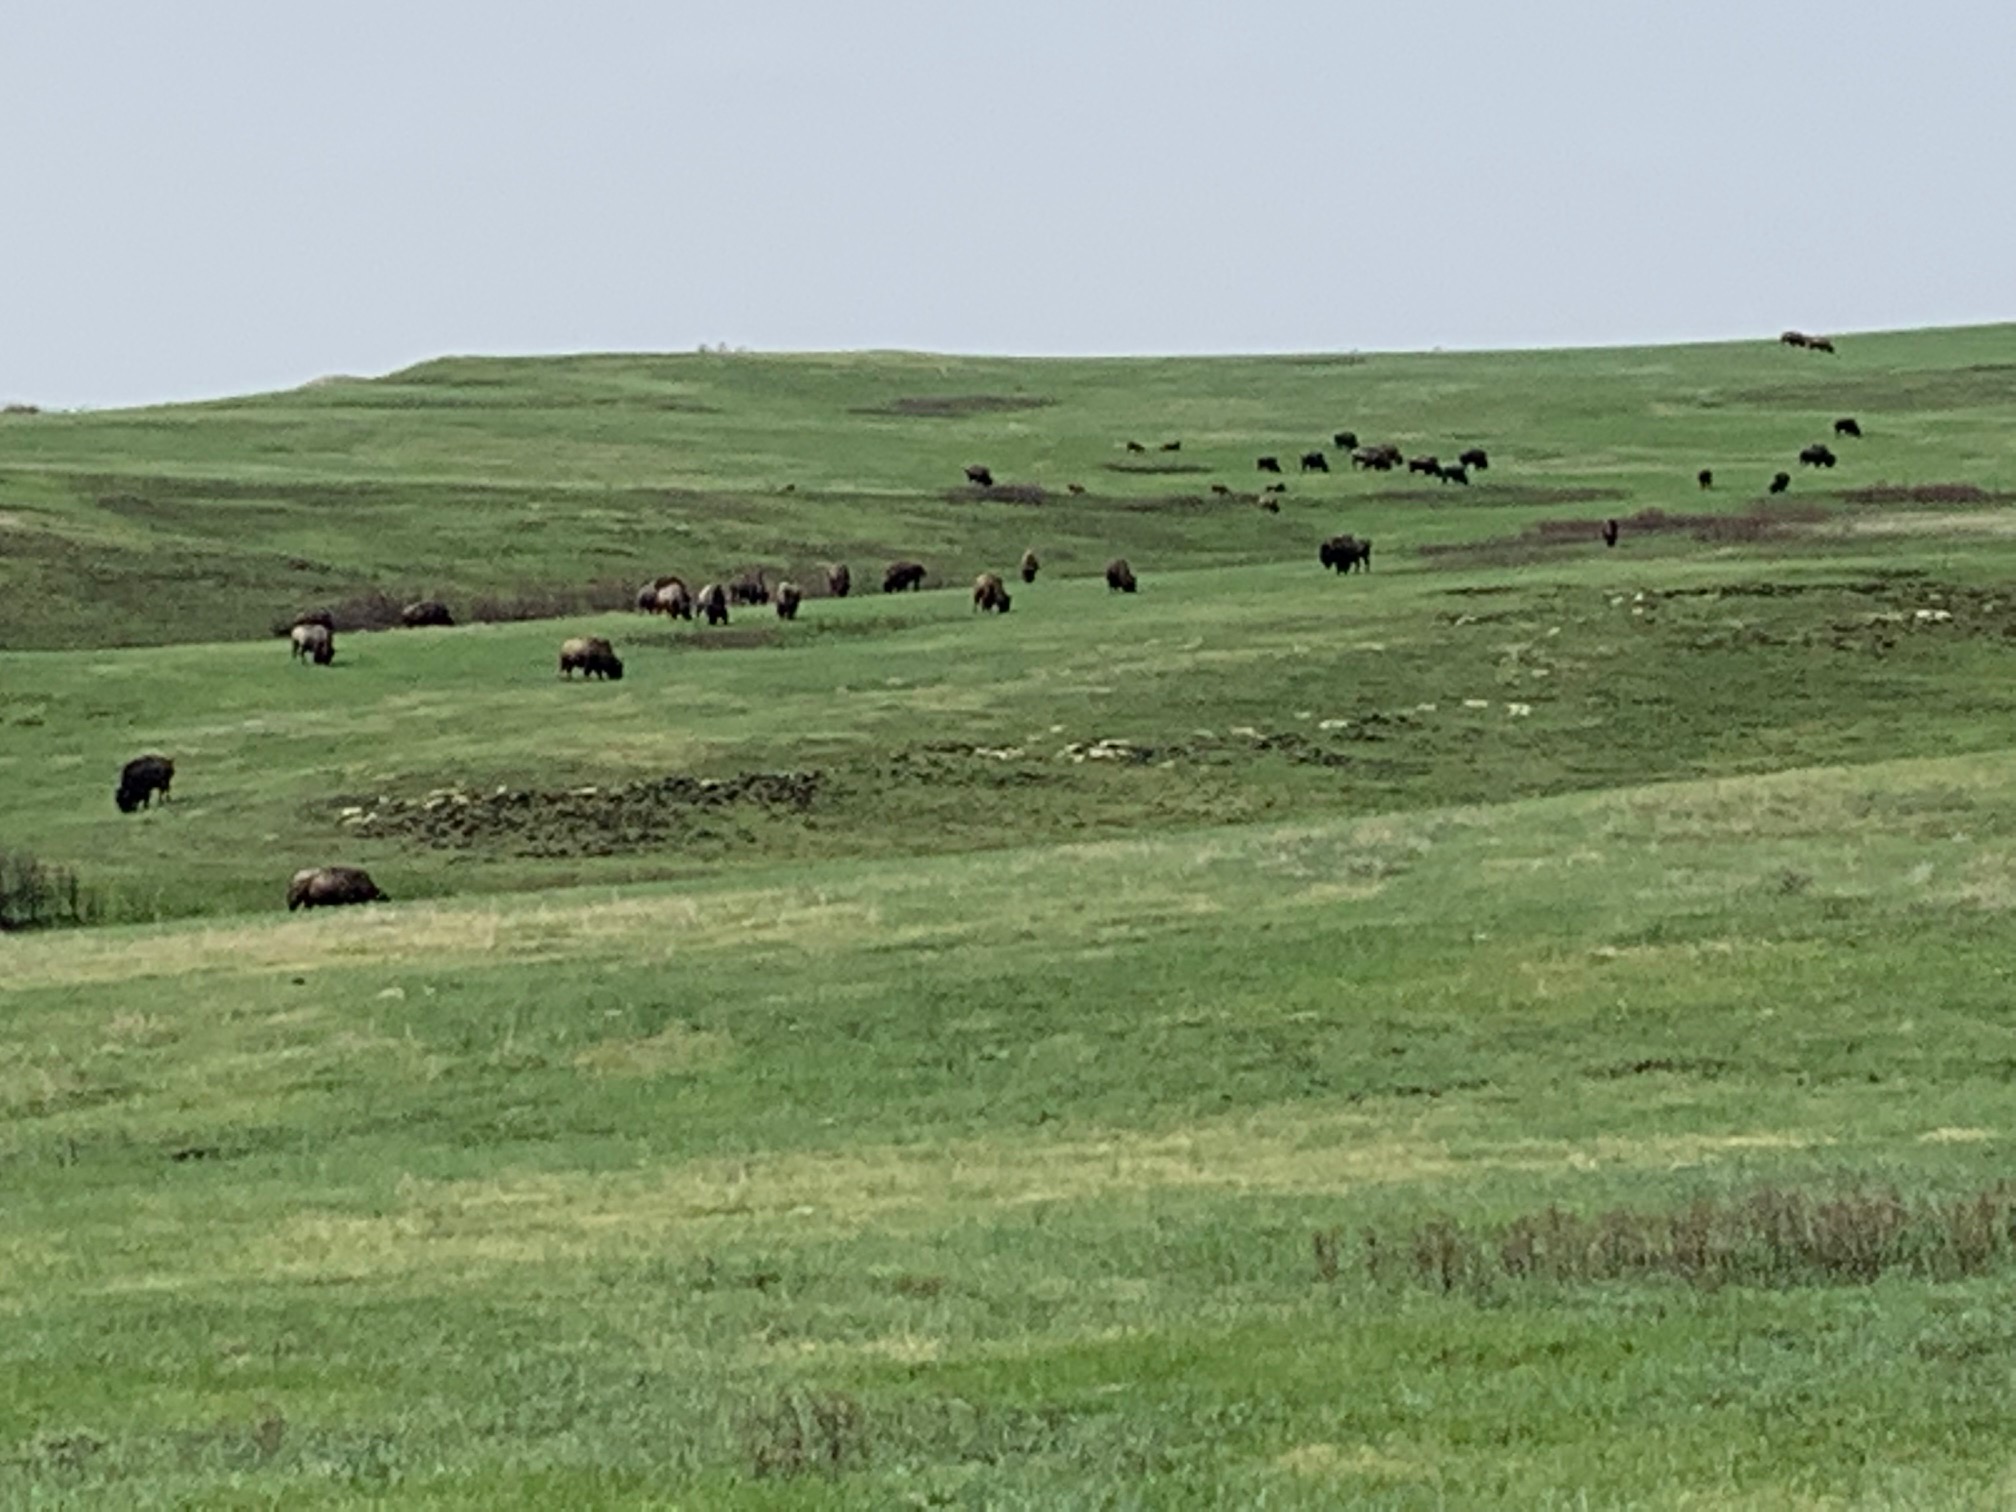 Buffalo grazing